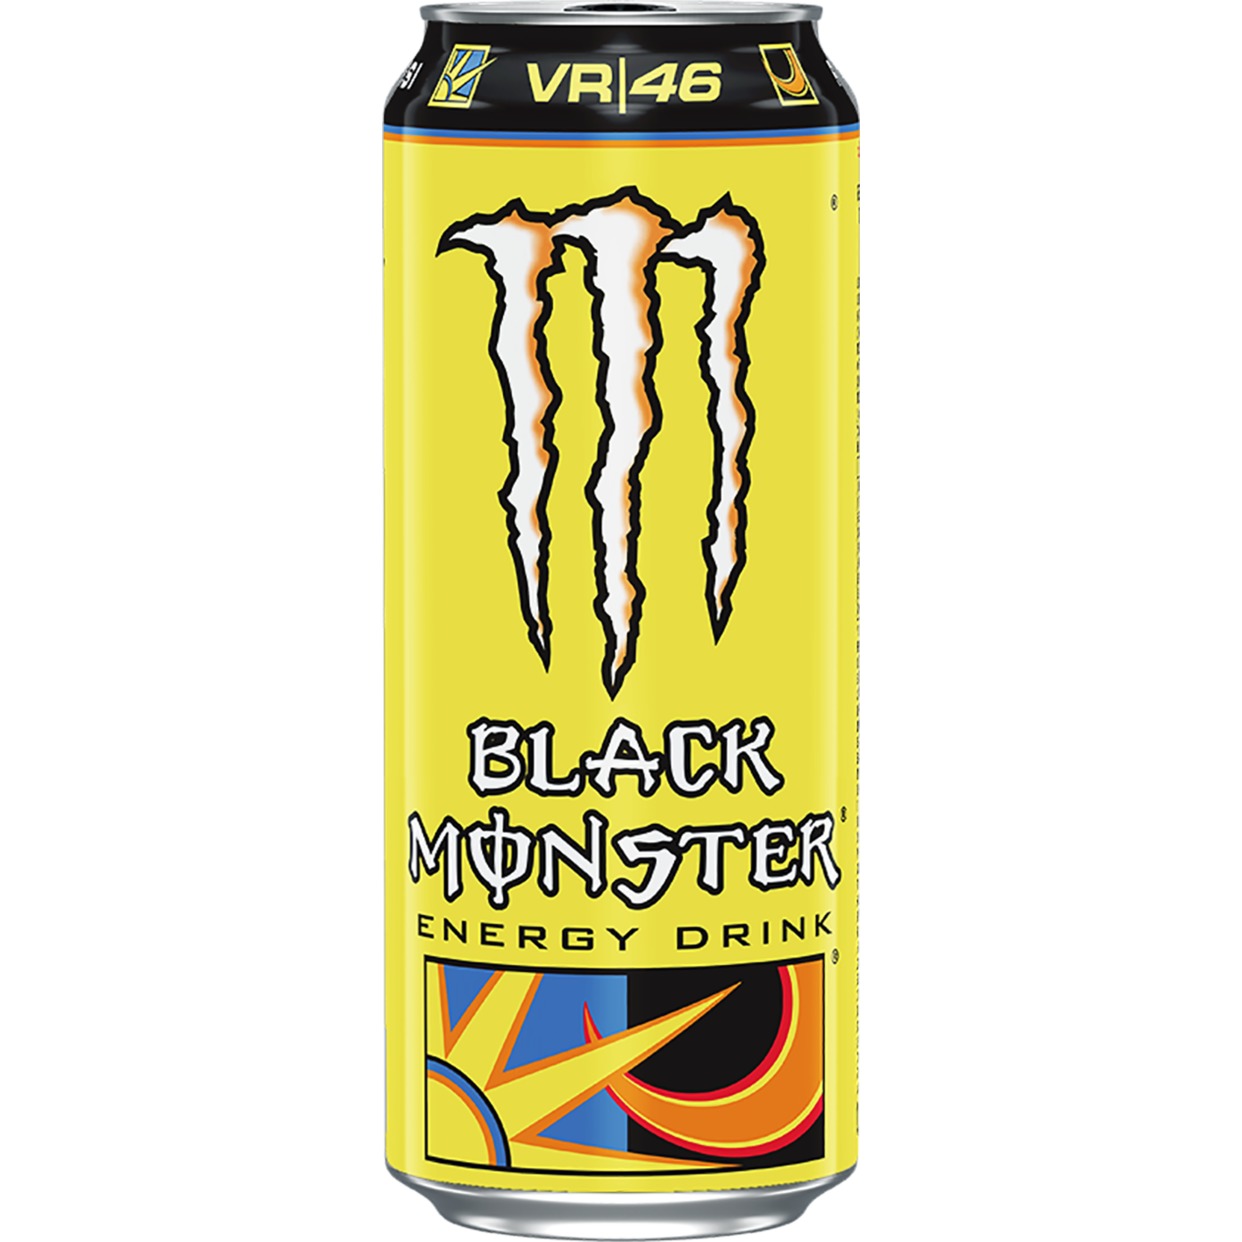 Black Monster The Doctor БЛЭК МОНСТР ЗЕ ДОКТОР напиток безалкогольный сильногазированный тонизирующий (энергетический) 0.449л по акции в Пятерочке